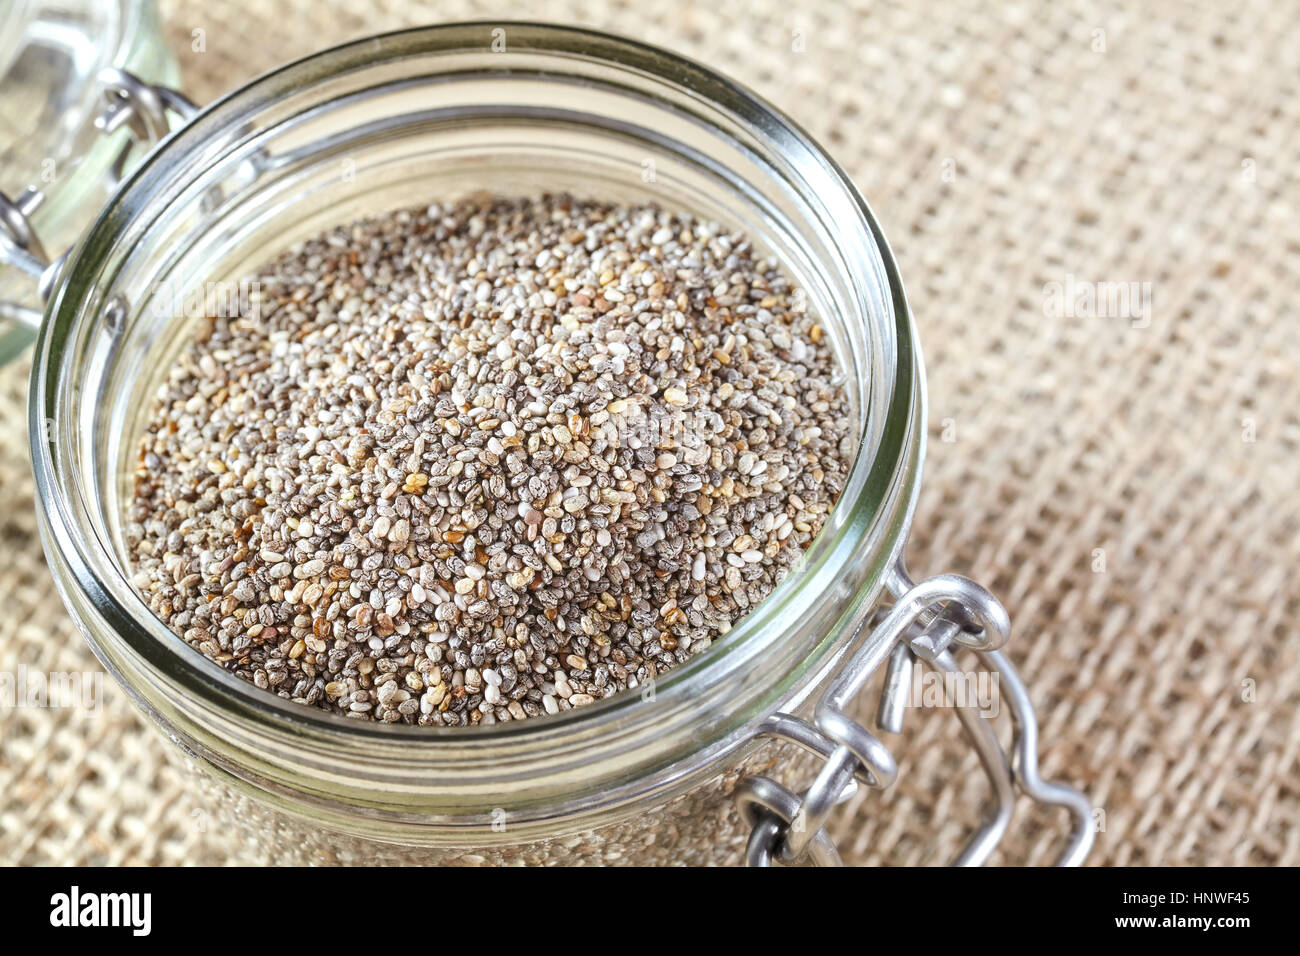 Nahaufnahme von Chia-Samen in einem Glas auf Leinen Hintergrund, Lebensmittel reich an Omega-3-Fettsäuren. Stockfoto